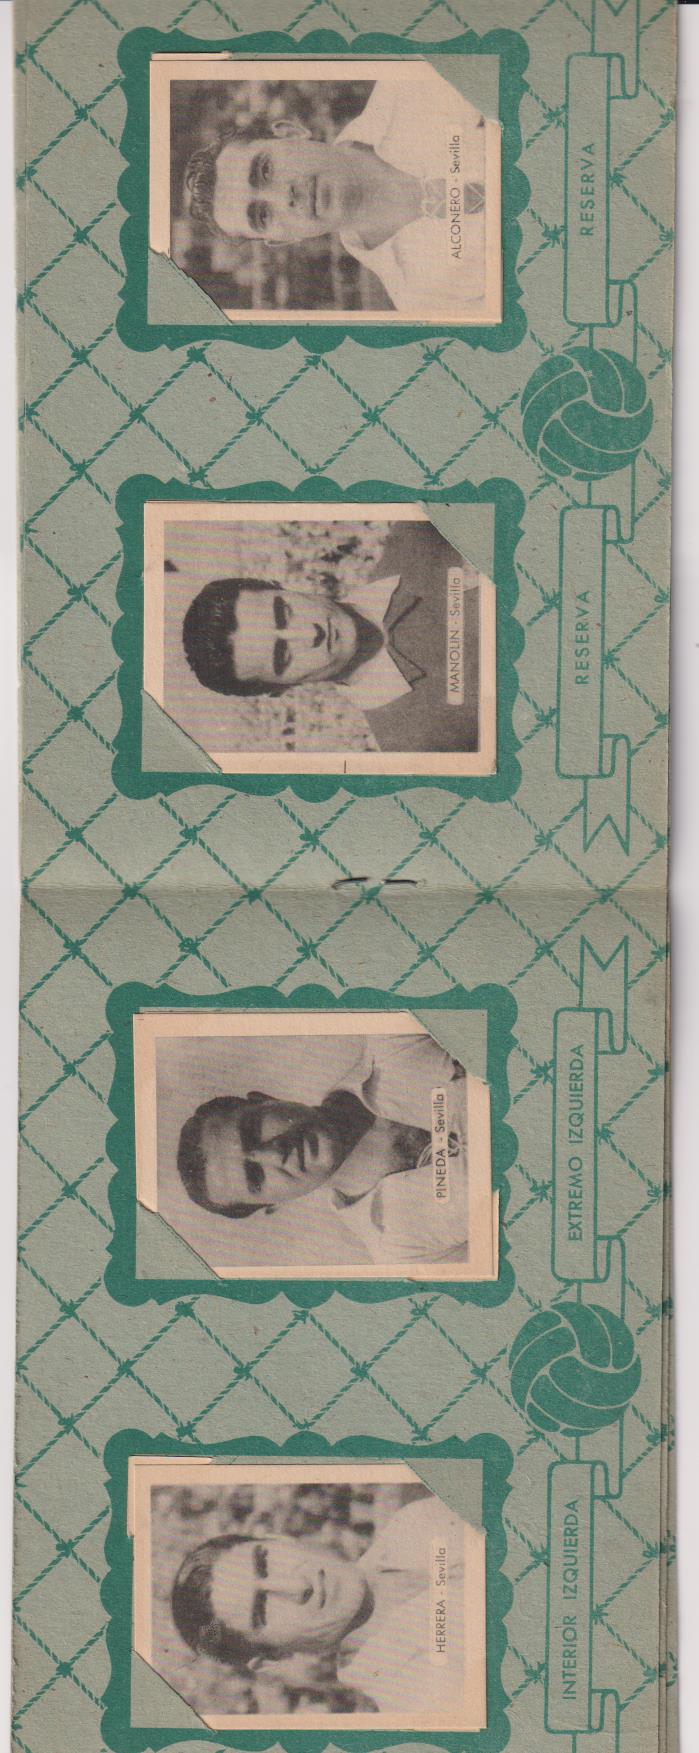 Álbum Campeonatos Nacionales de Futbol Sevilla C.F. Ruiz Romero 1940-50. MUY DIFÍCIL ASÍ